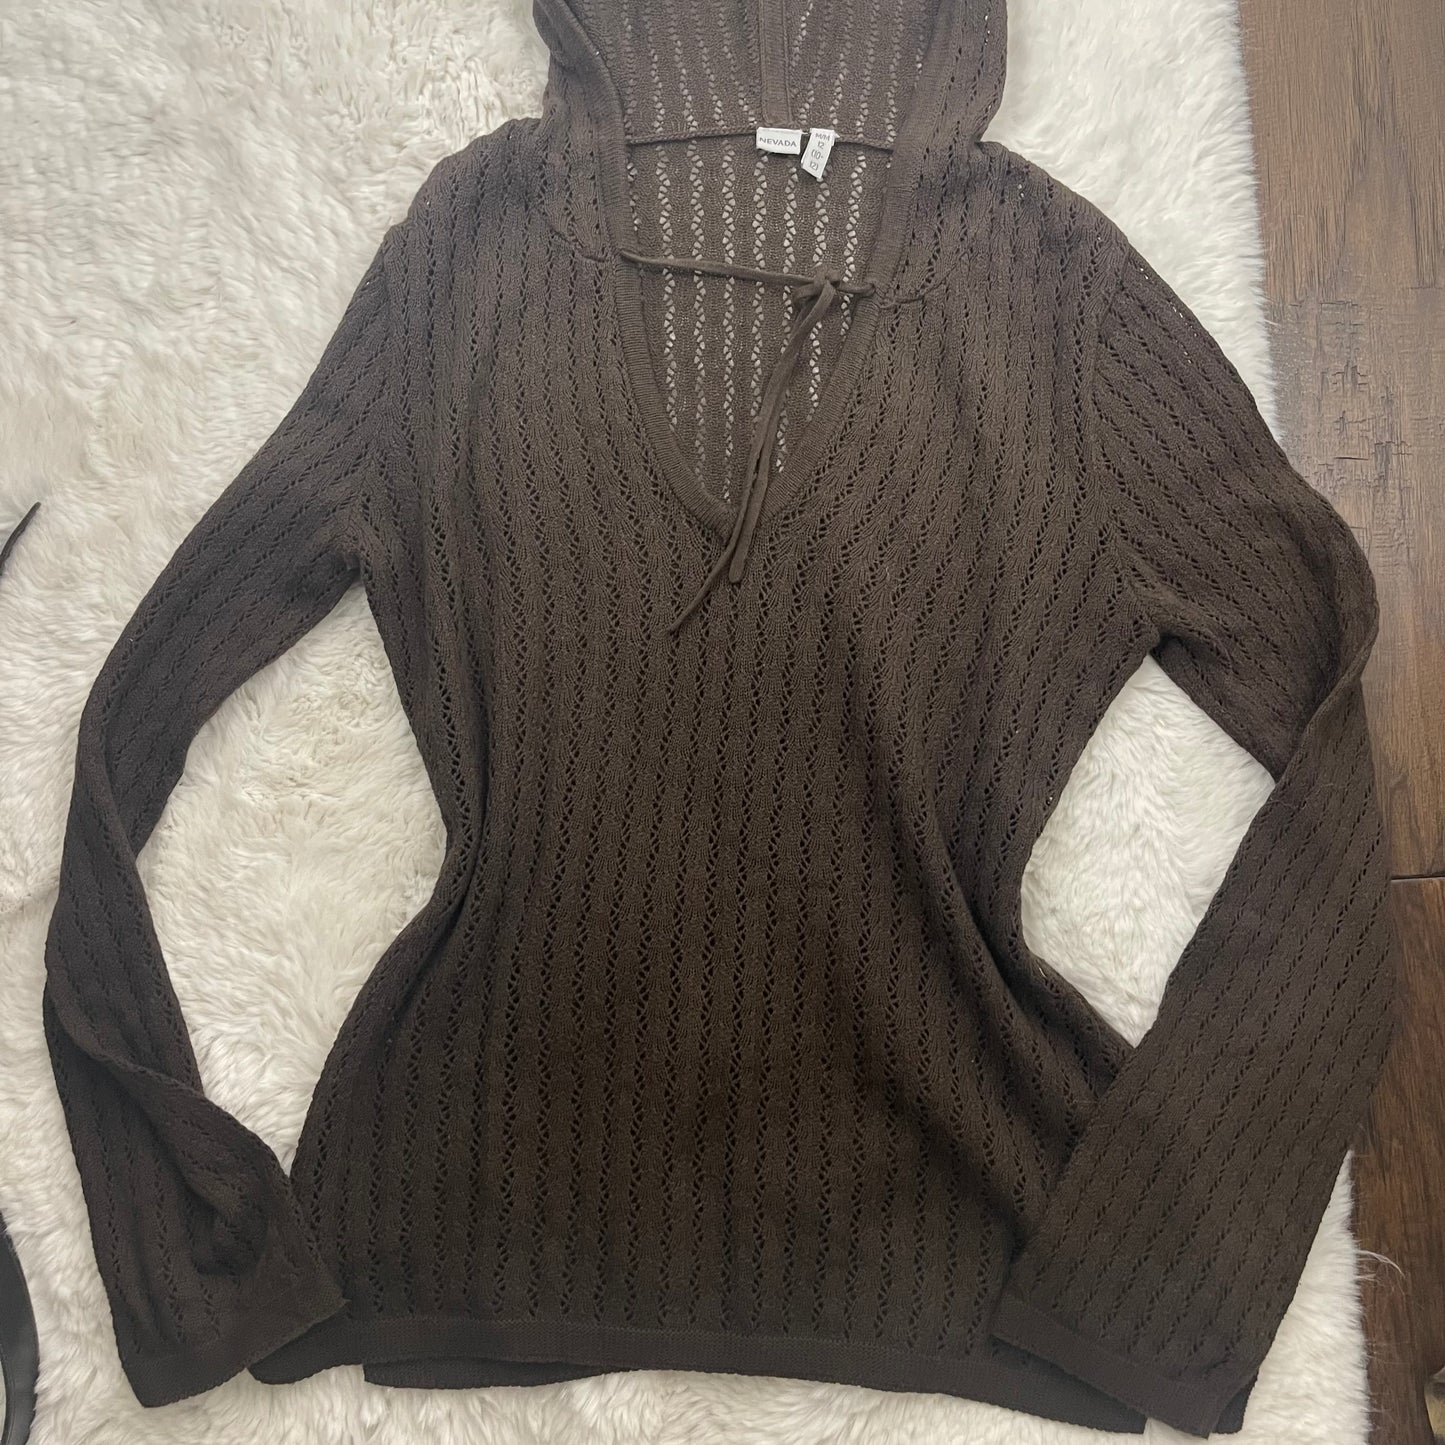 Vintage Brown Boho Hooded Sweater